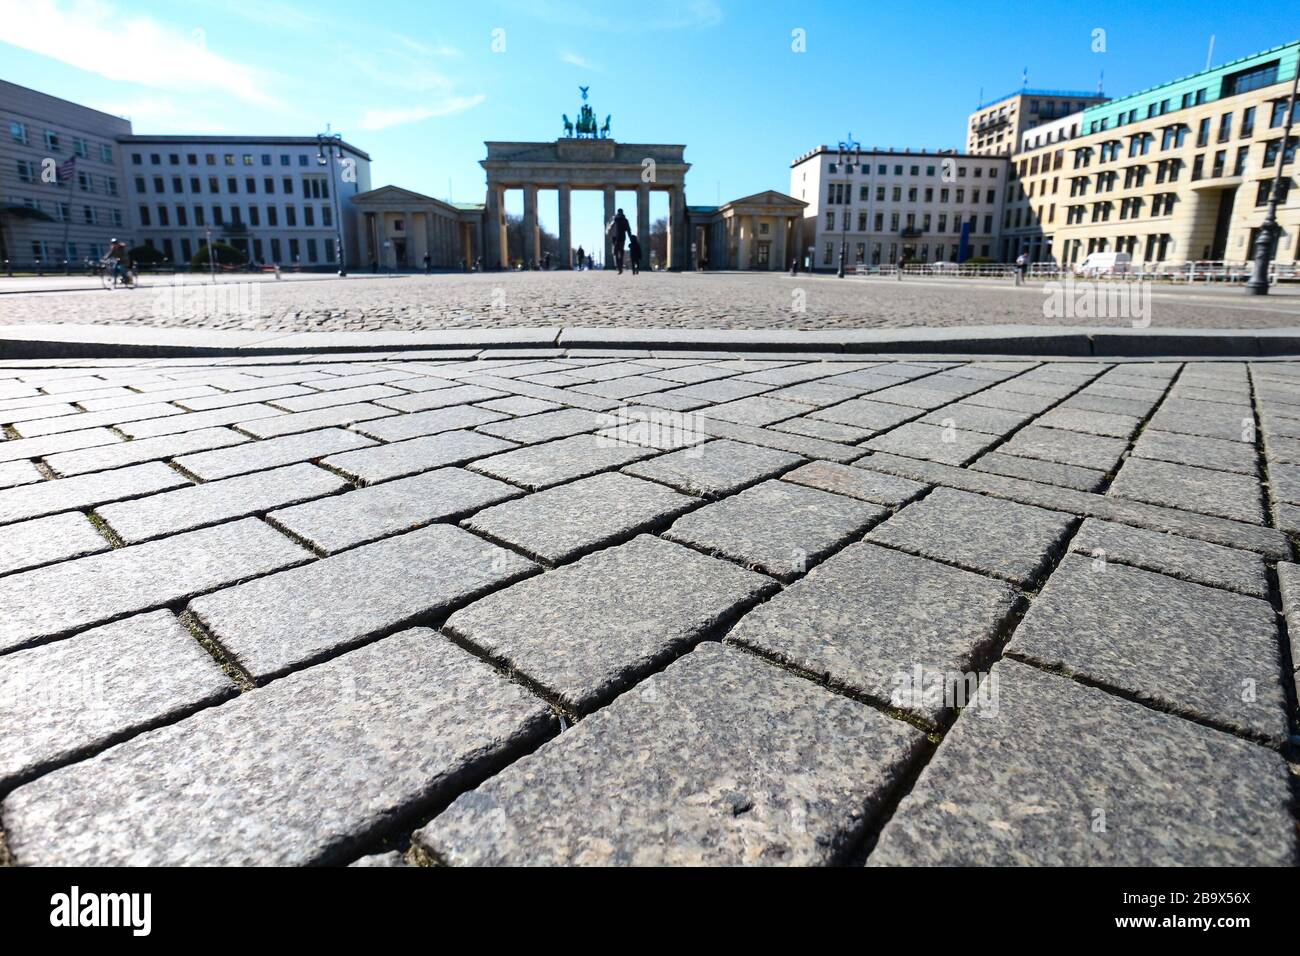 La place en face de la porte de Brandebourg à Berlin, généralement un point de repère important et un point de repère touristique, est désertée pendant le verrouillage de Coronavirus en Allemagne. Banque D'Images